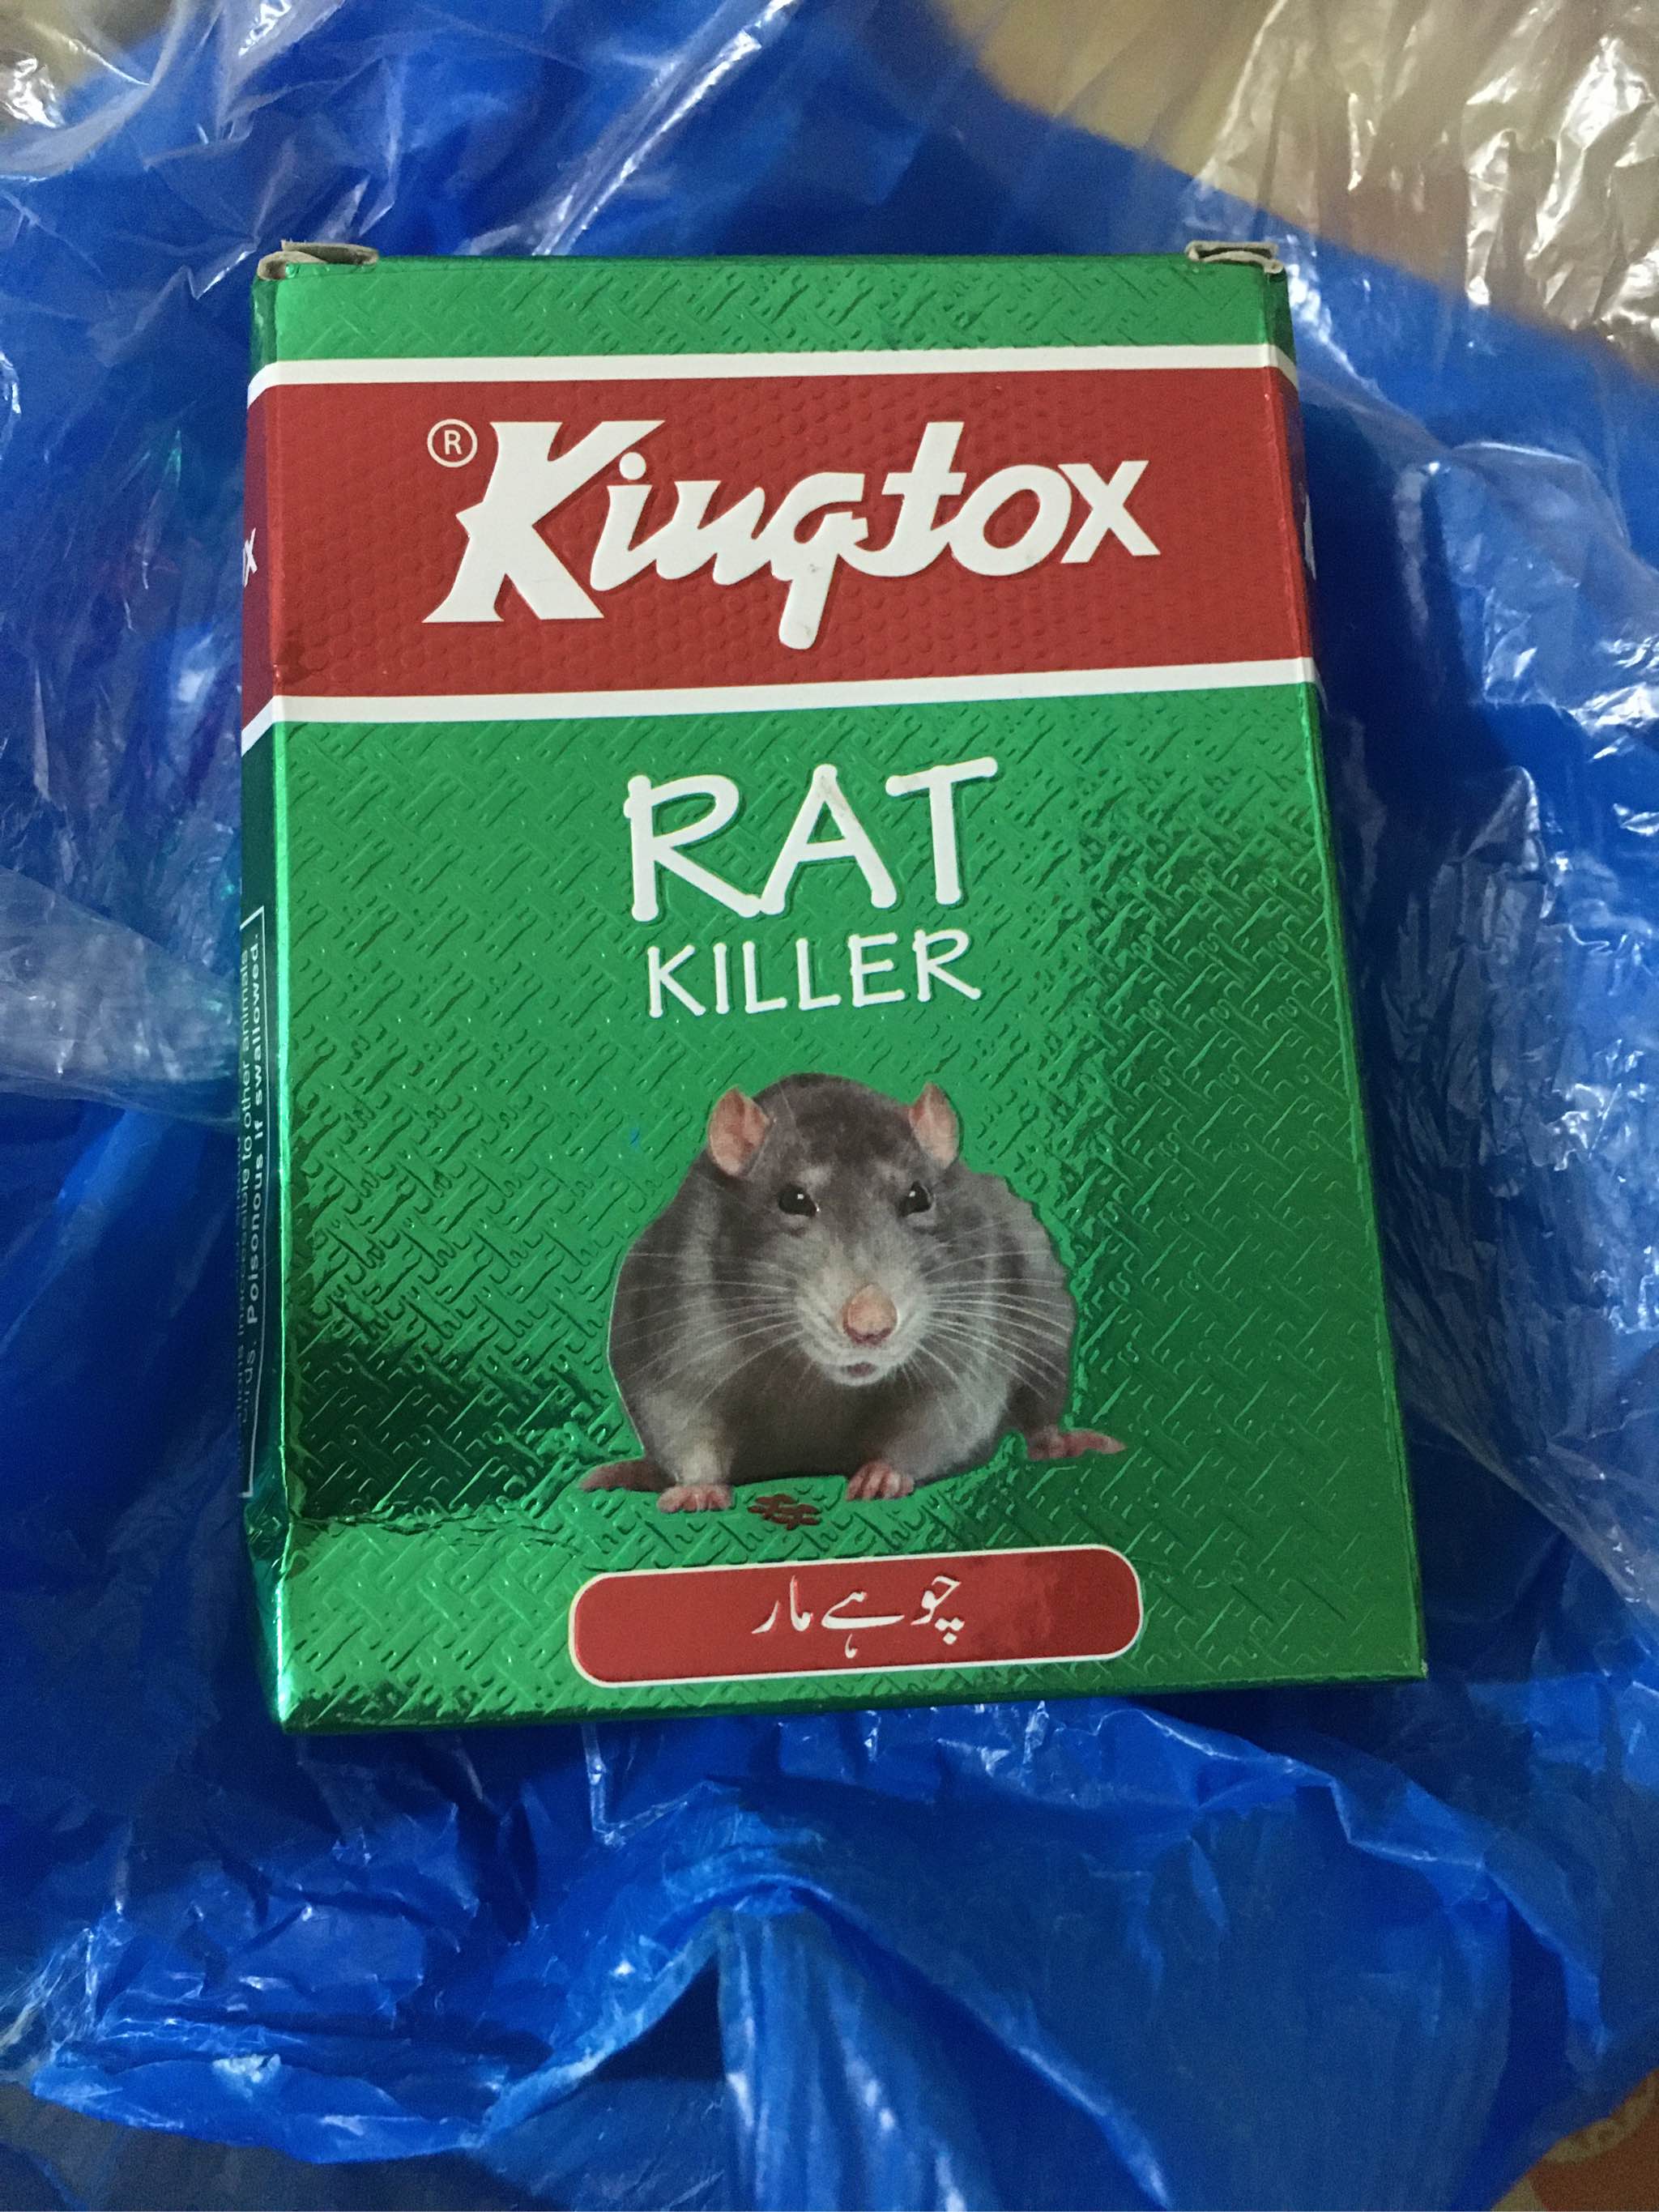 What Happens If a Human Eats Rat Poison?